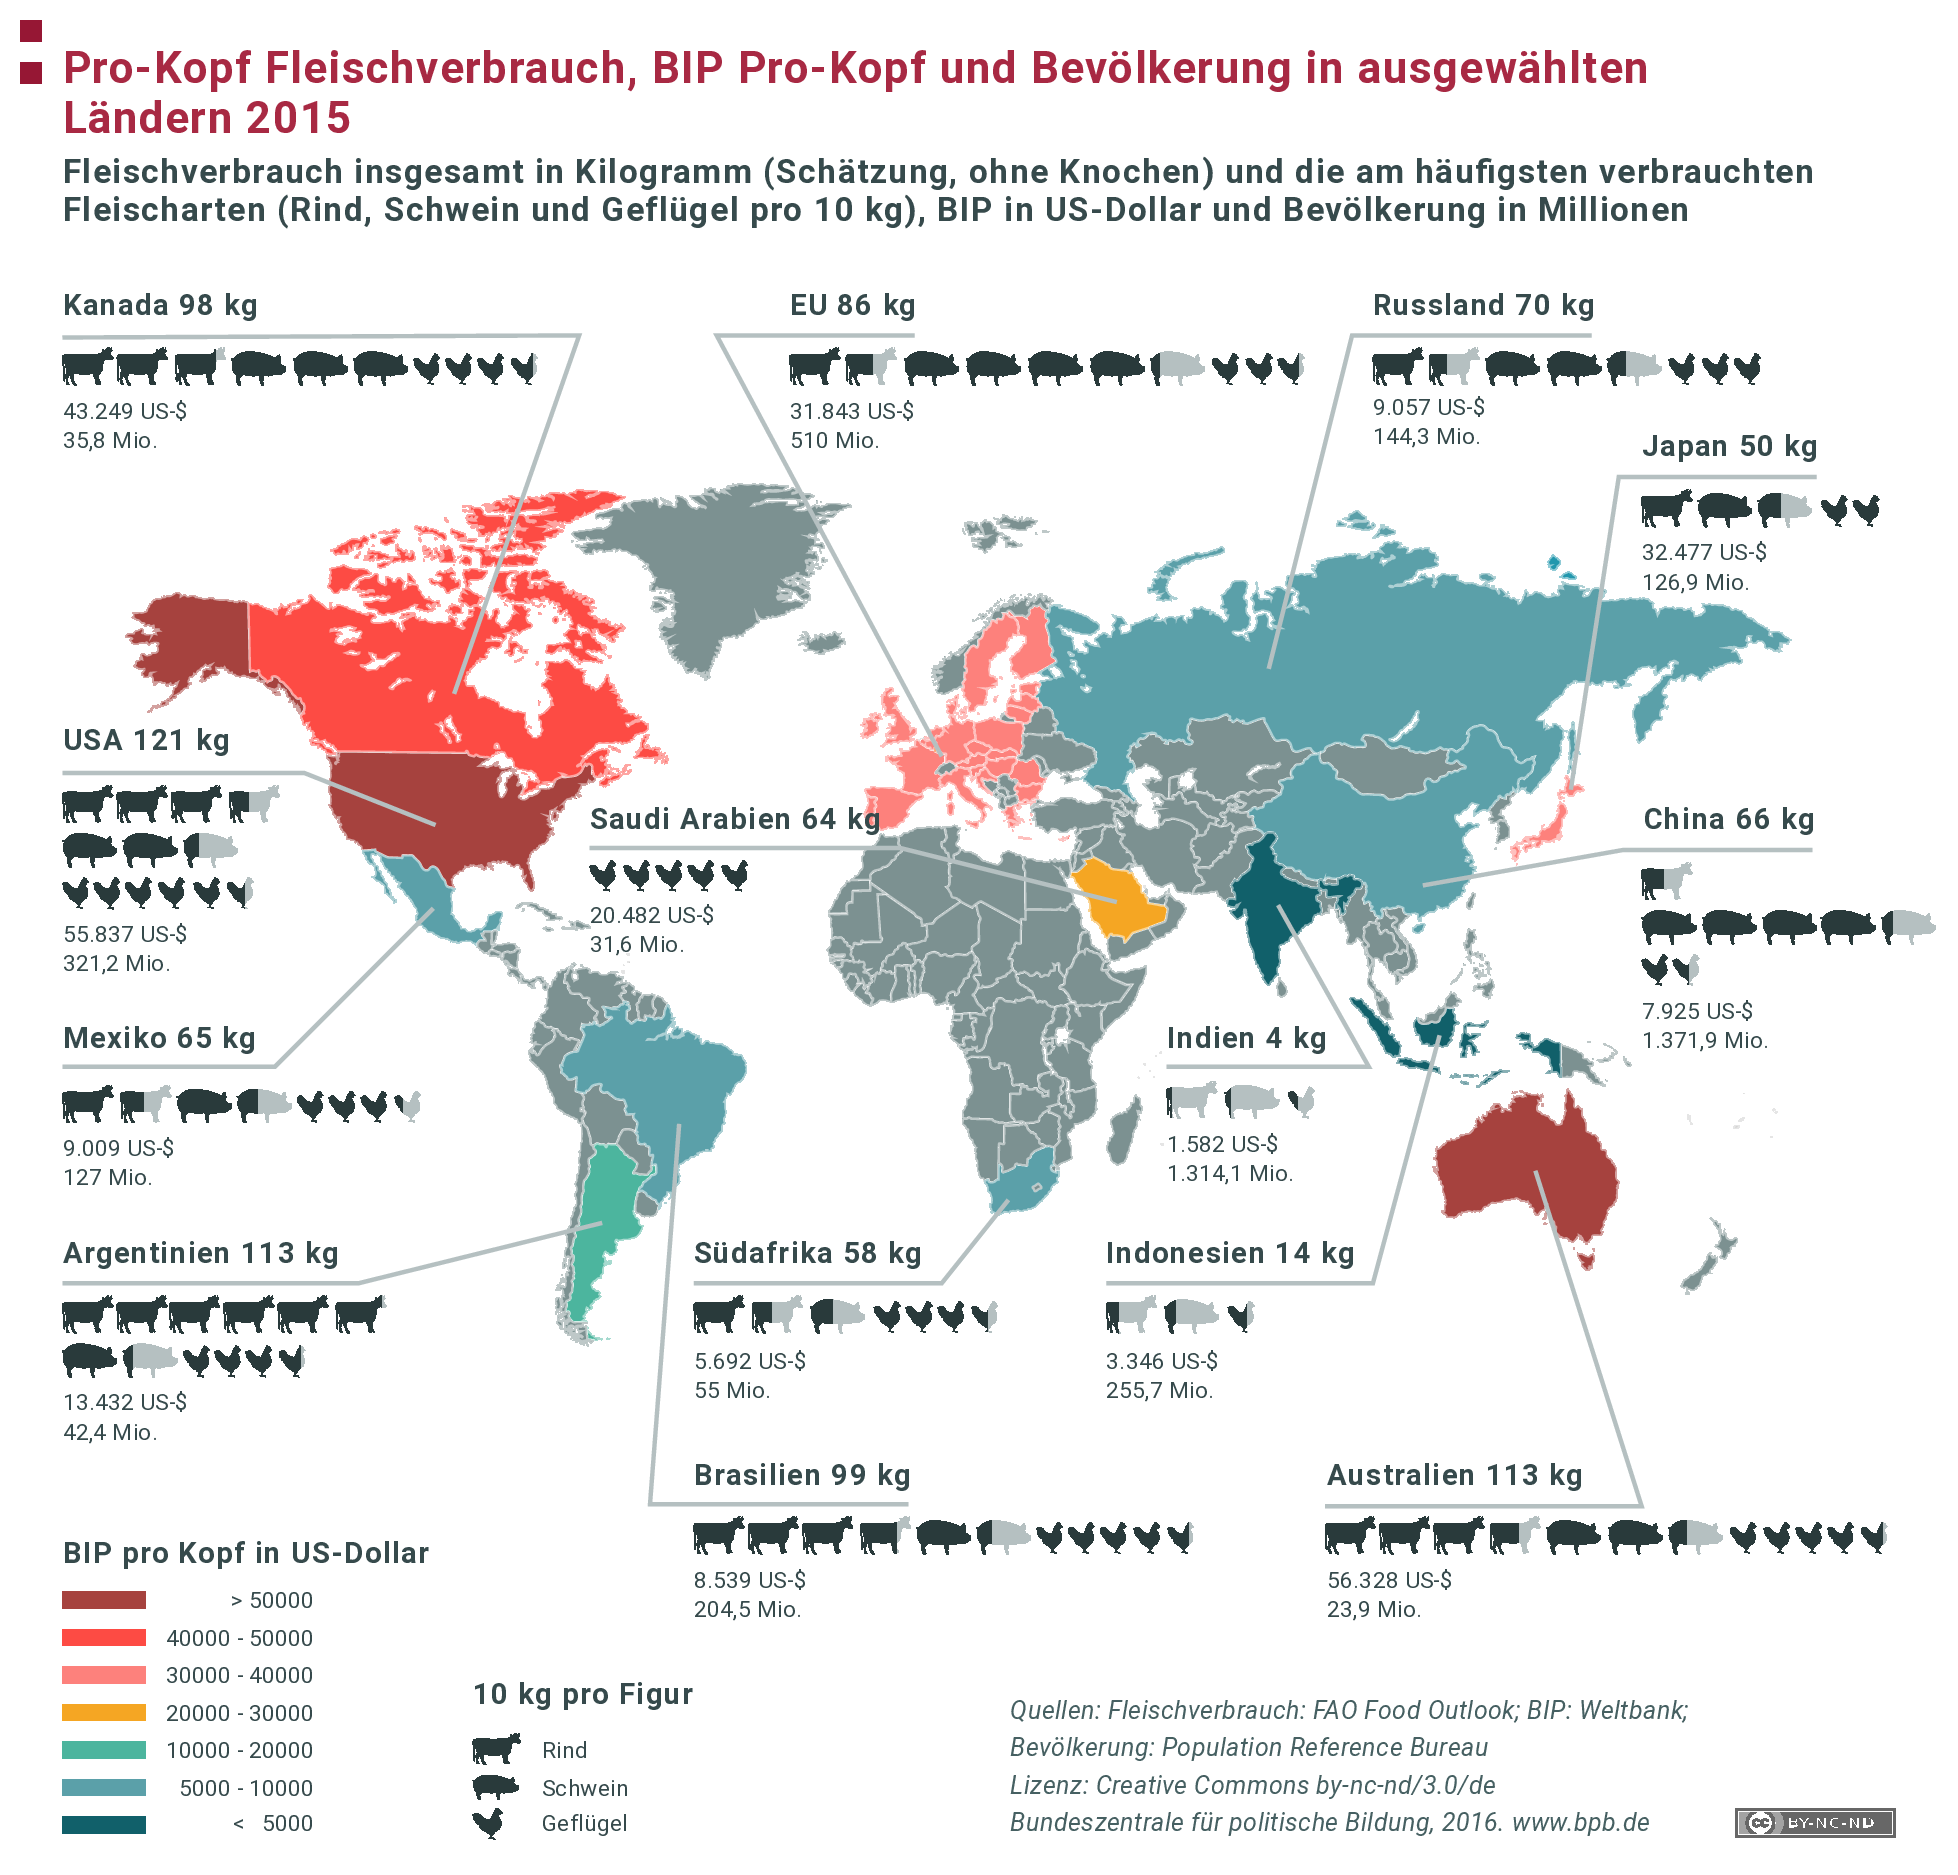 Pro-Kopf Fleischverbrauch, BIP Pro-Kopf und Bevölkerung in ausgewählten Ländern 2015